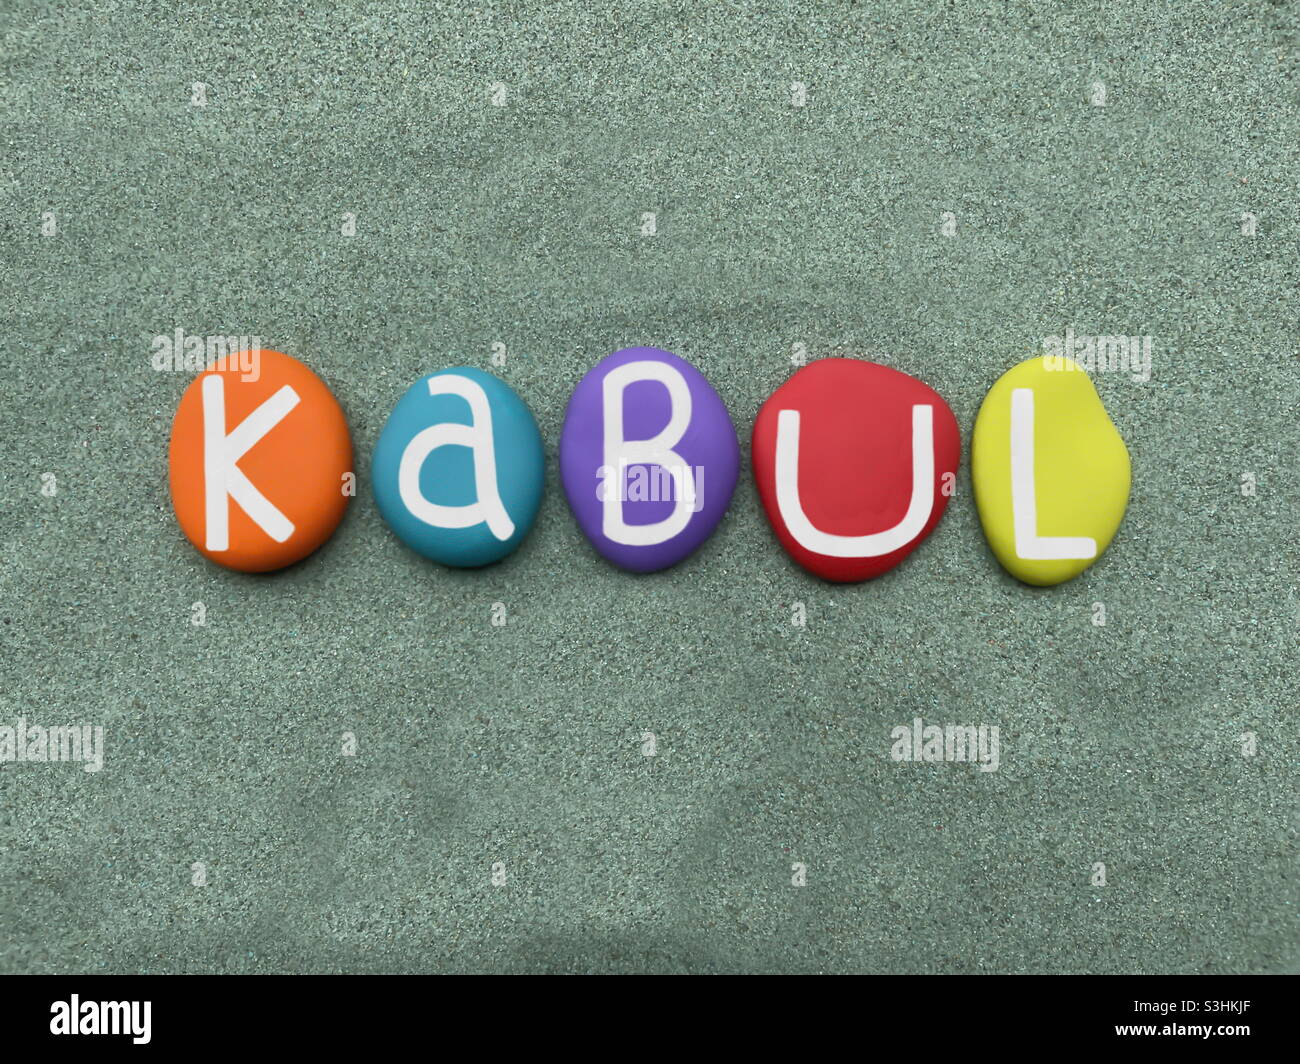 Kabul, capitale dell'Afghanistan, souvenir composto da lettere in pietra multicolore dipinte a mano su sabbia verde Foto Stock